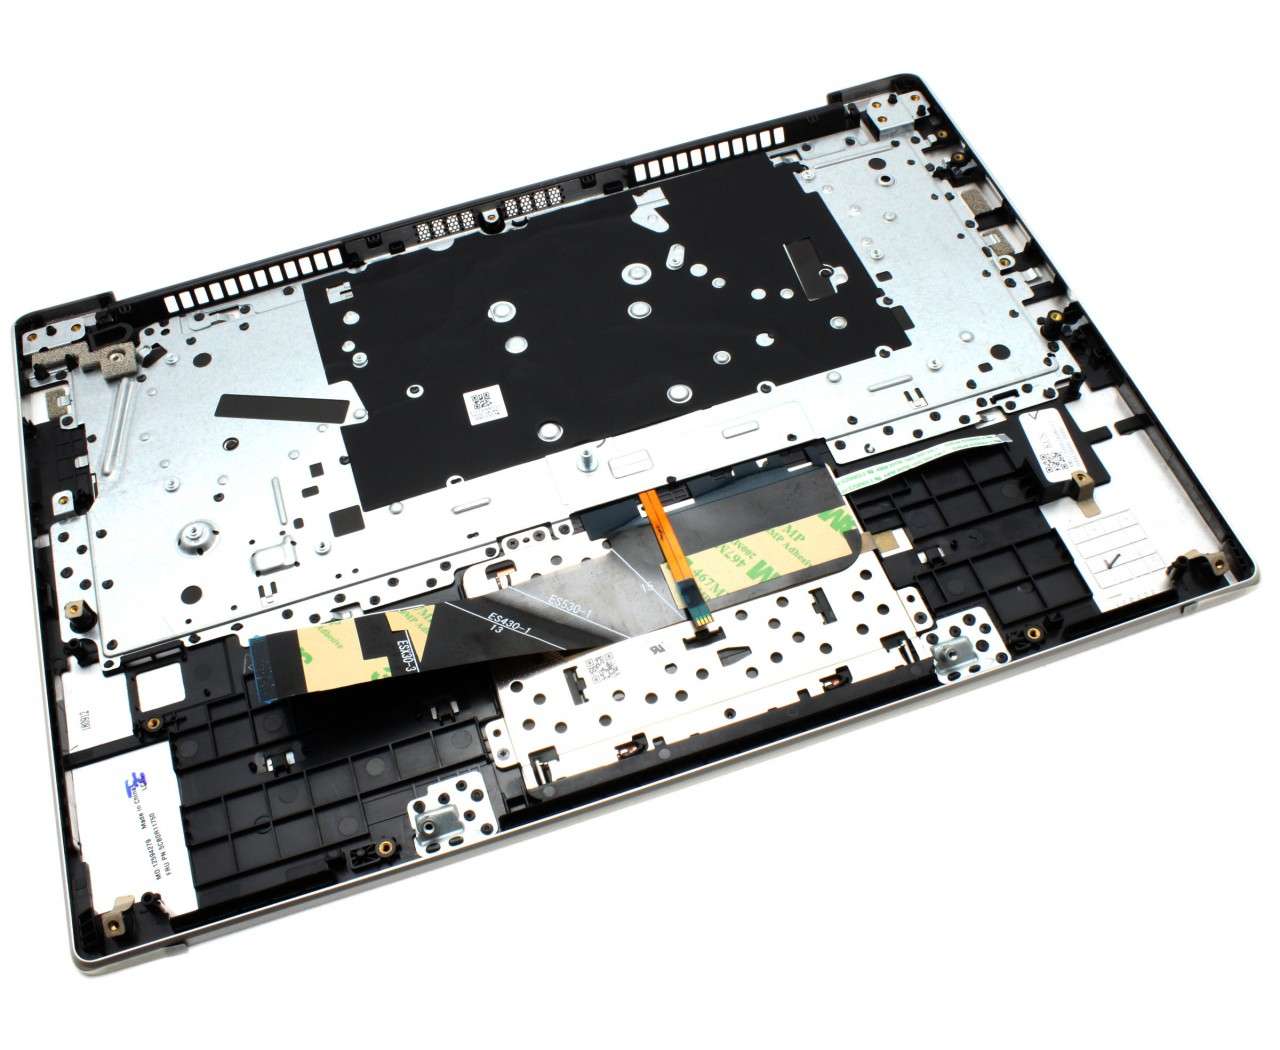 Tastatura Lenovo Yoga IdeaPad 530S-14 Gri cu Palmrest Argintiu si TouchPad iluminata backlit image0